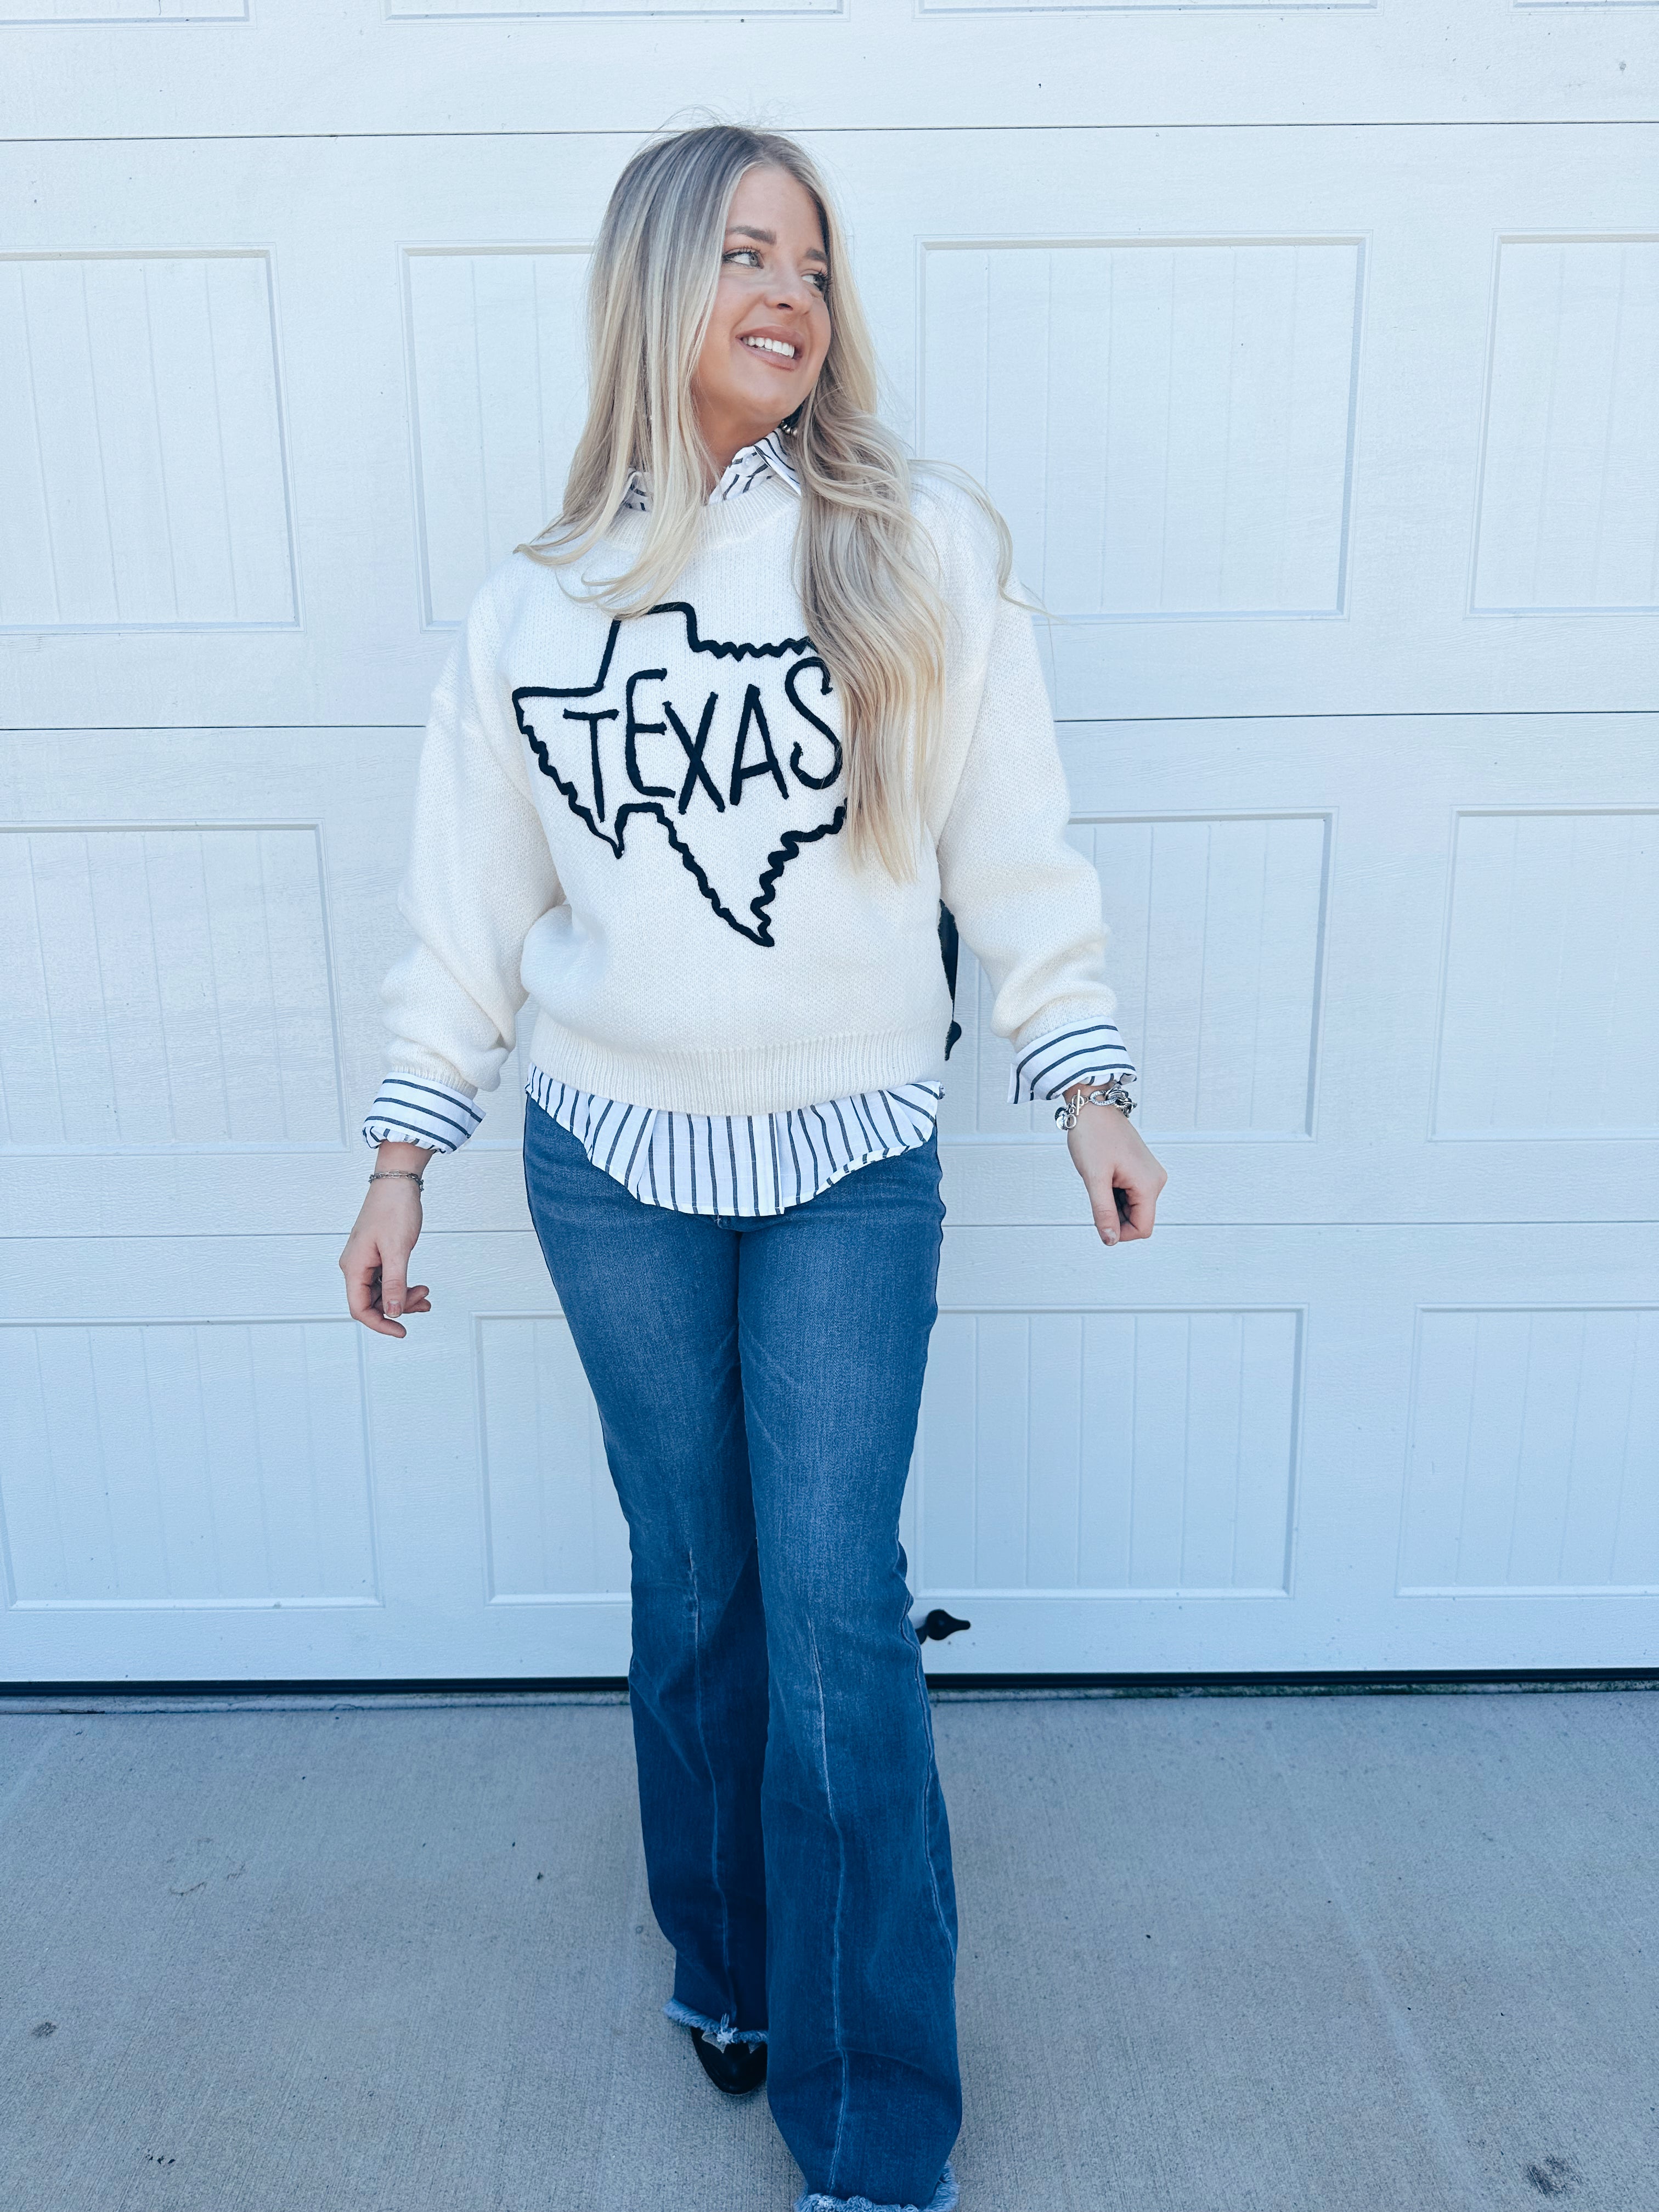 The Texan Sweater